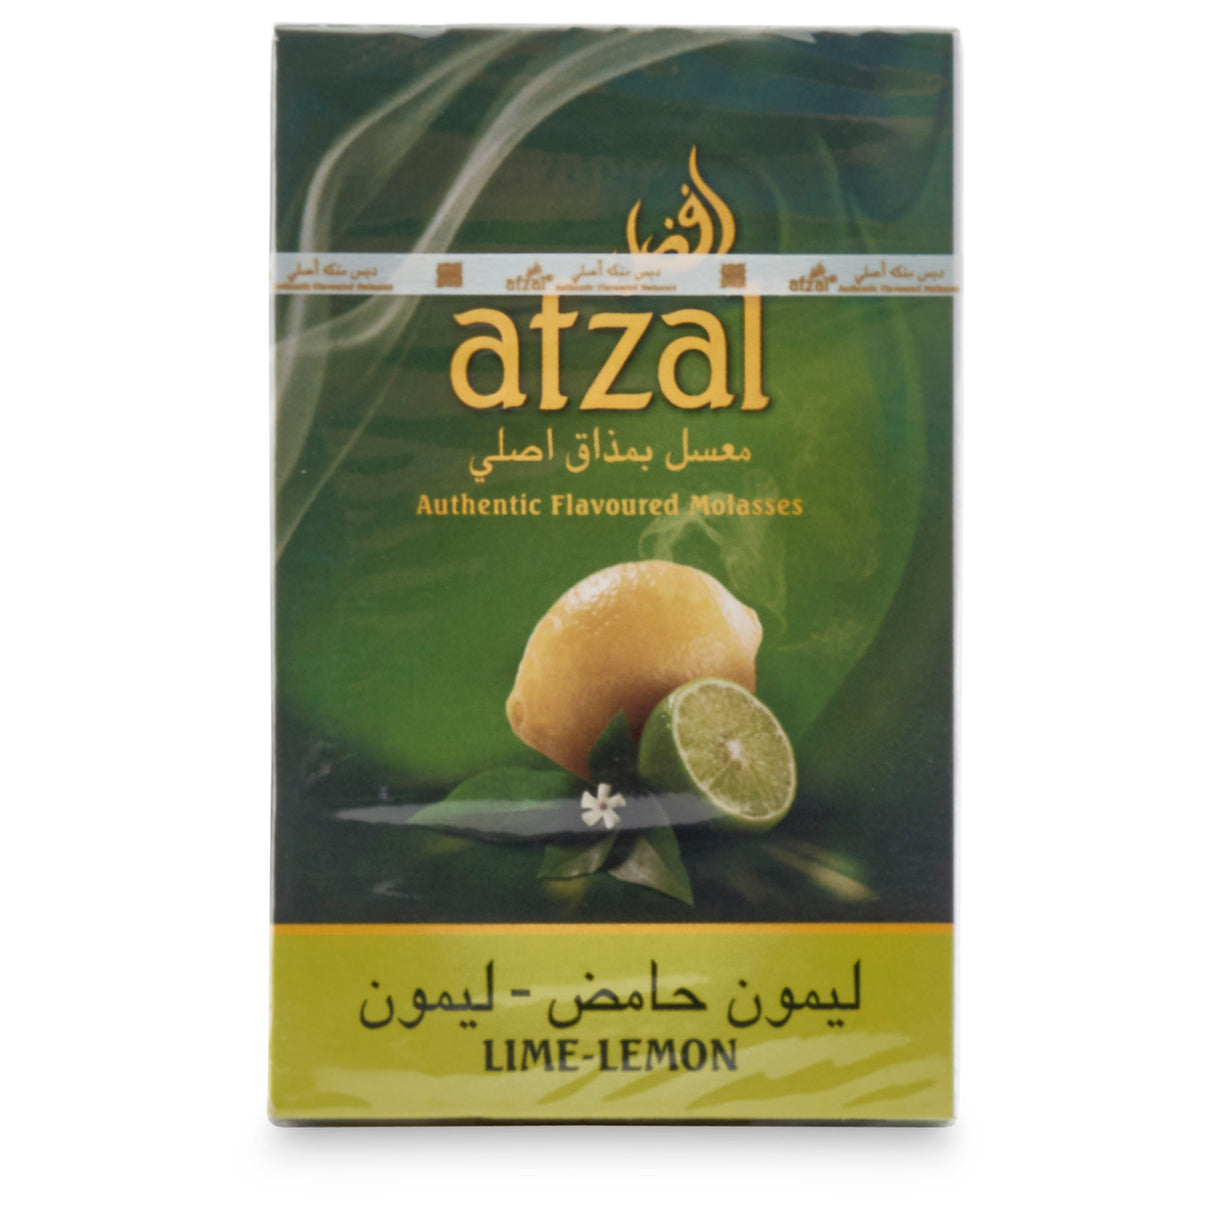 Afzal Lime Lemon Flavor Shisha Tobacco 50g